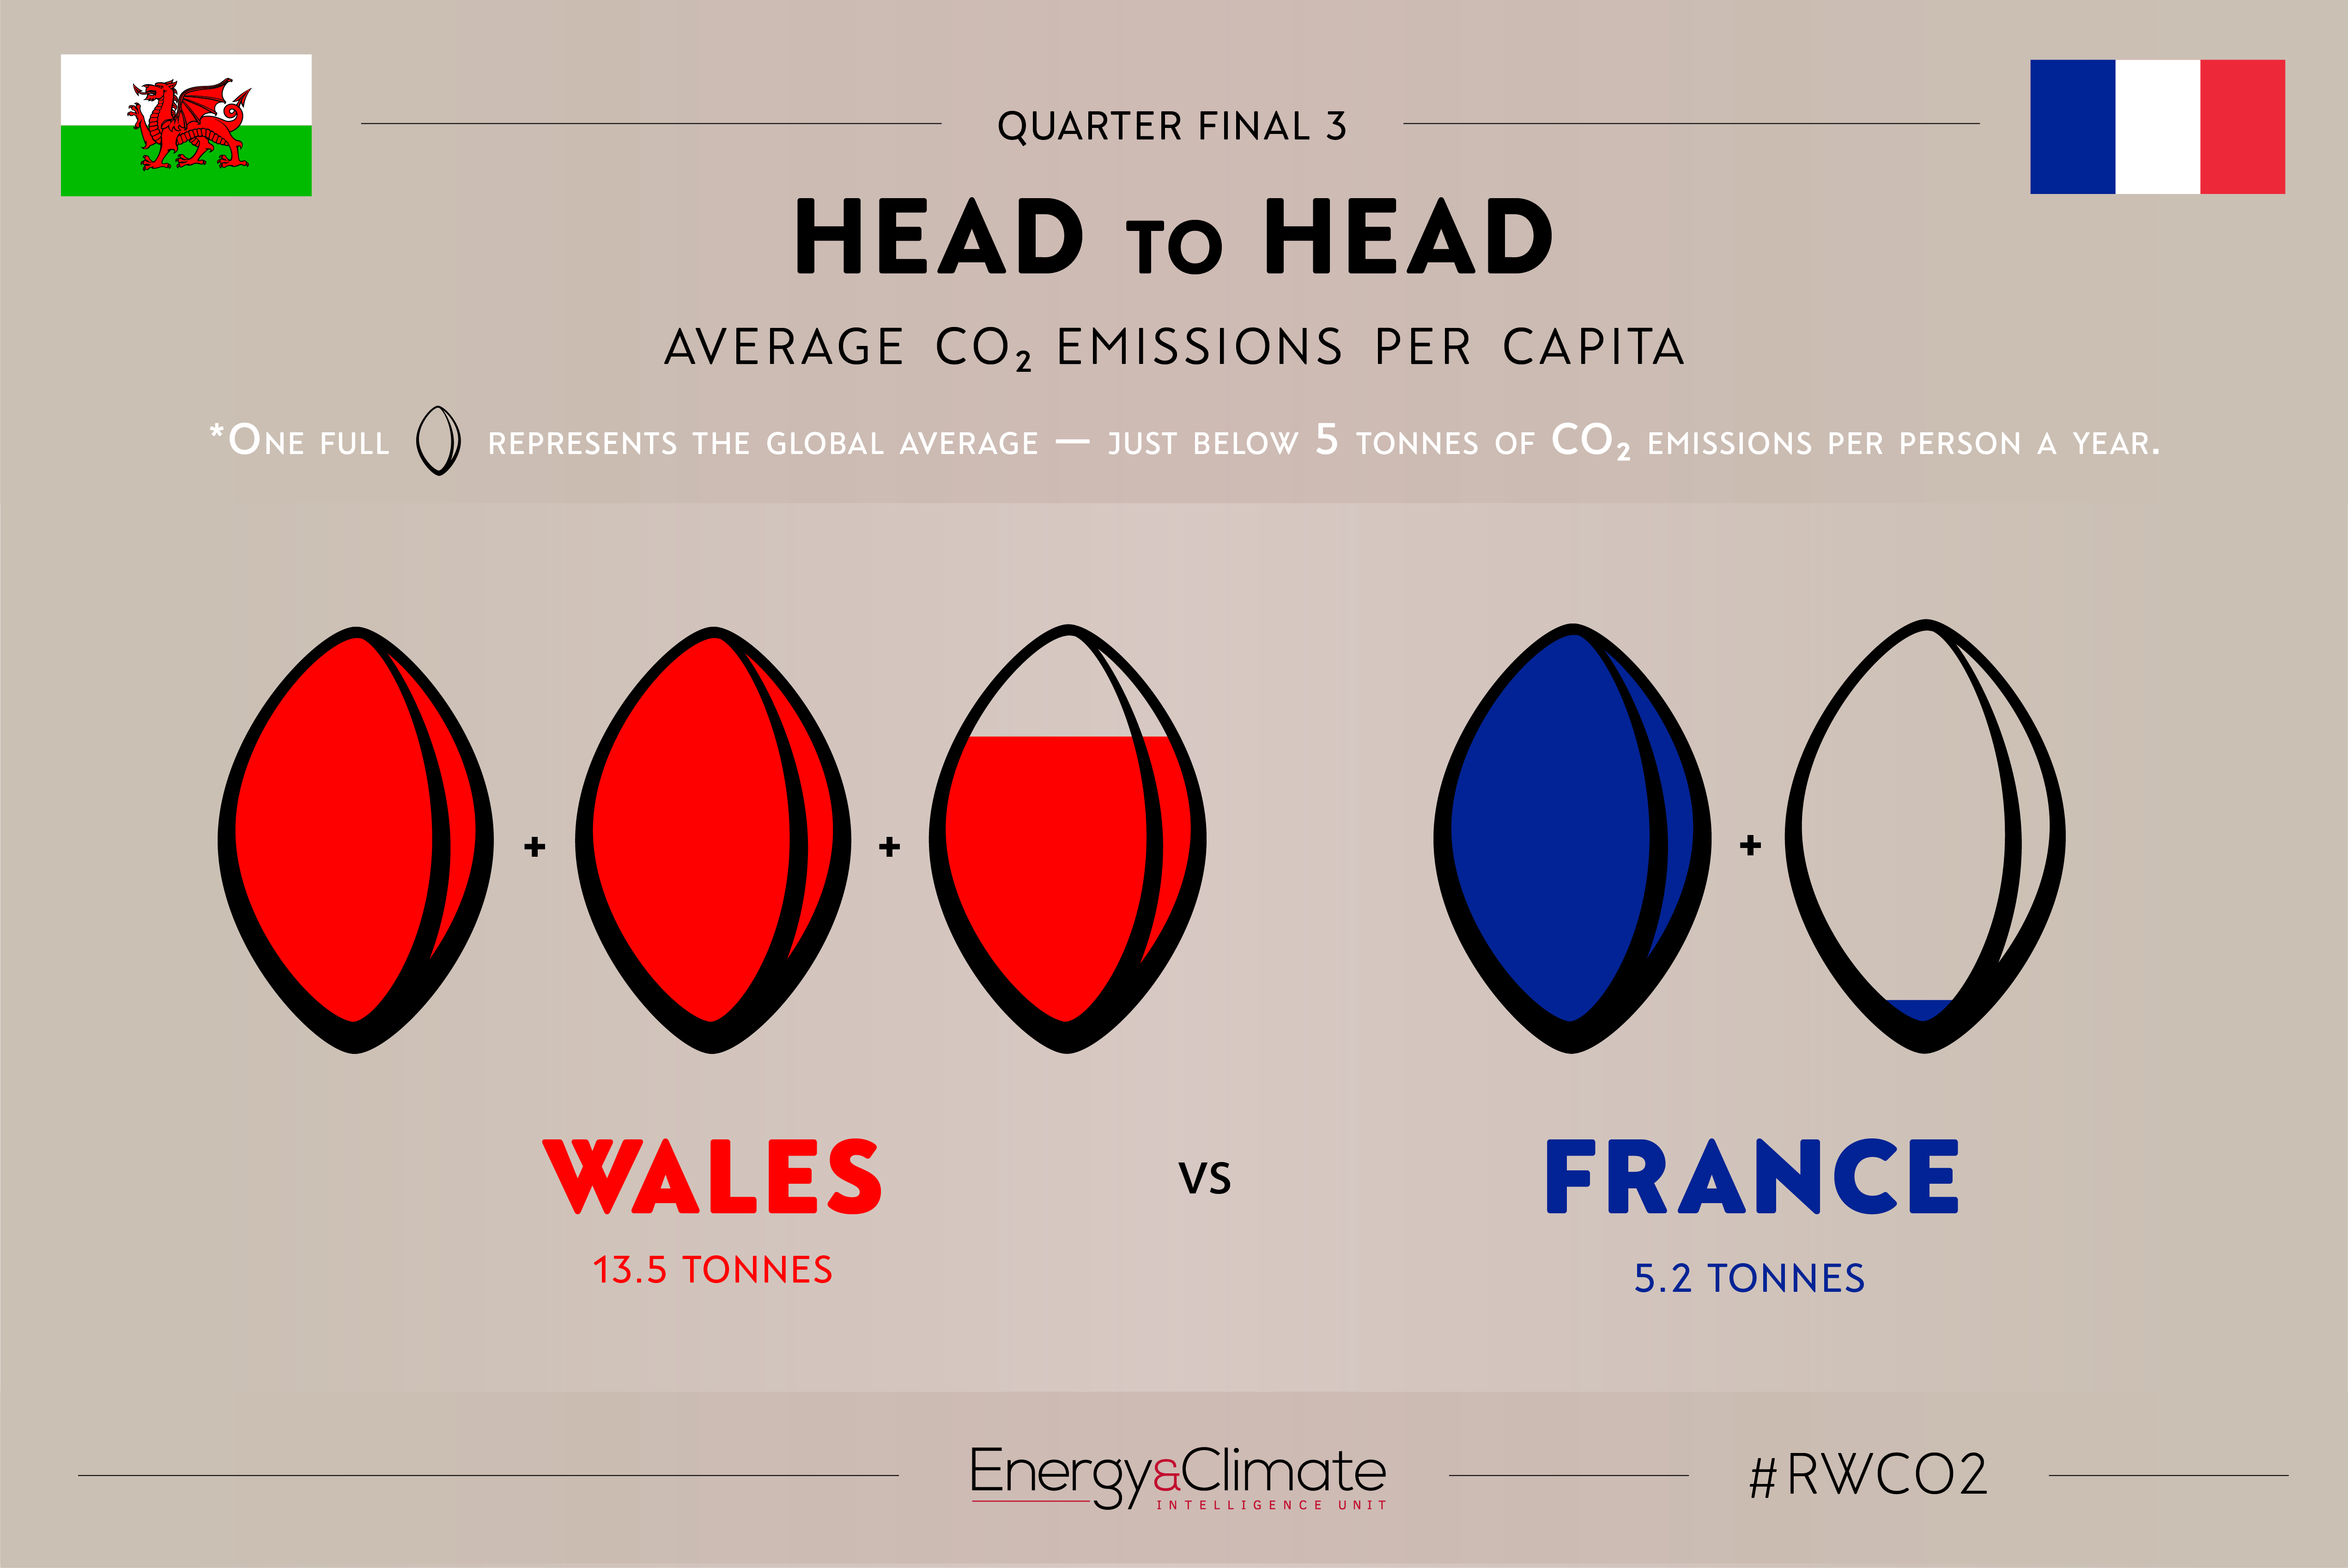 Wales v France - per capita emissions